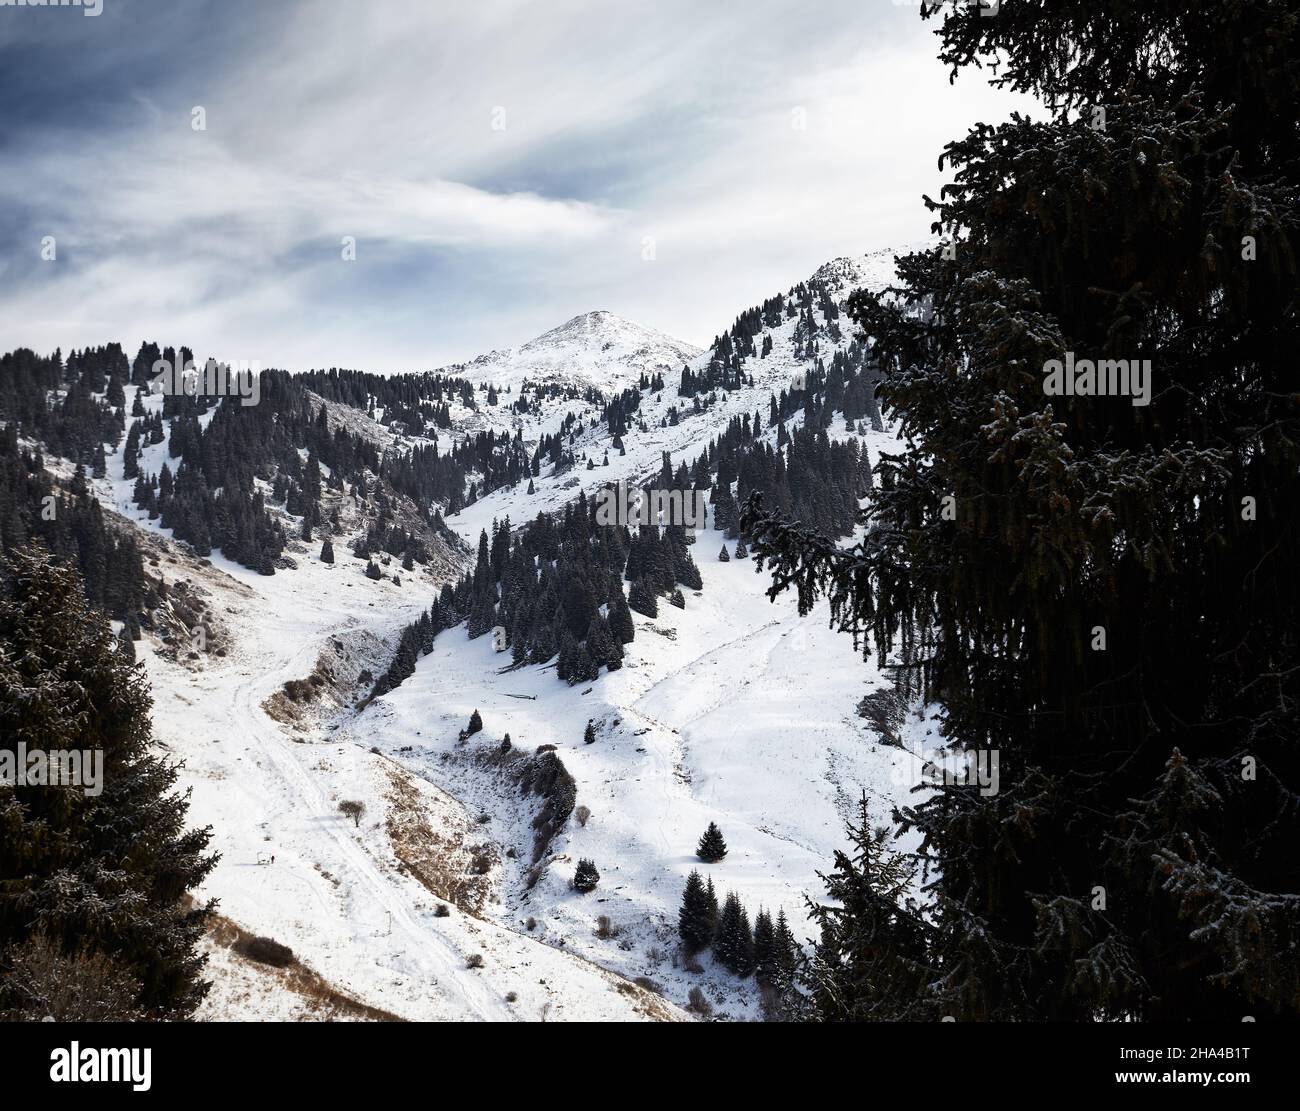 Wunderschöne Winterlandschaft des verschneiten Berges Furmanovka auf der Zaili Alatay Range in Almaty mit Fichtenwald gegen den bewölkten Himmel in Kasachstan Stockfoto